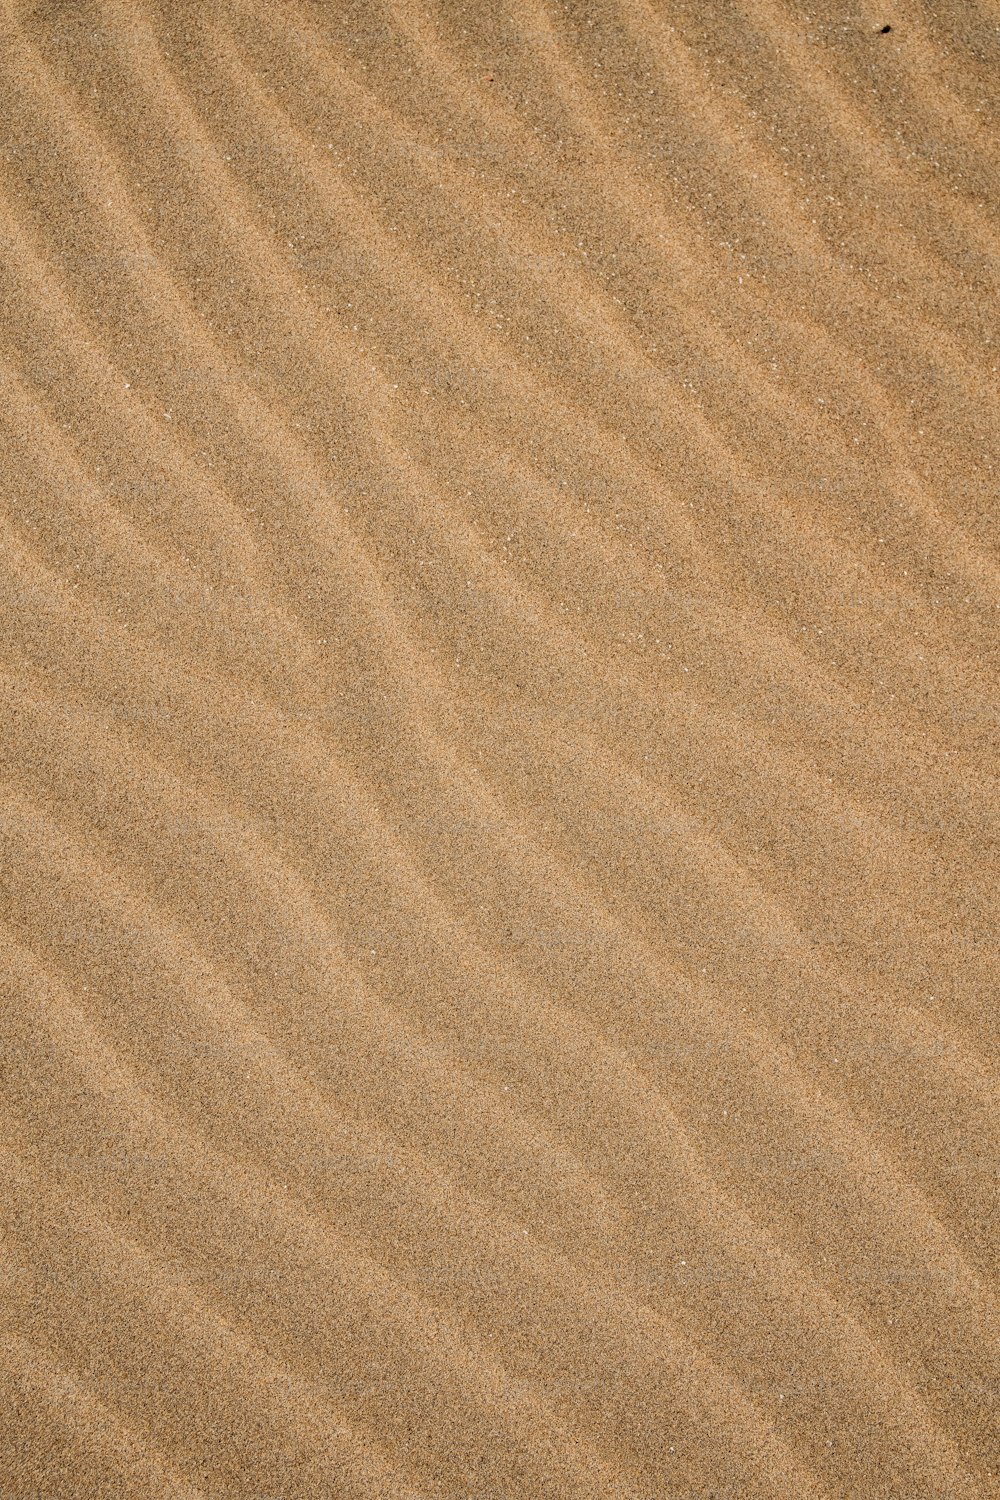 Ein Vogel steht im Sand am Strand